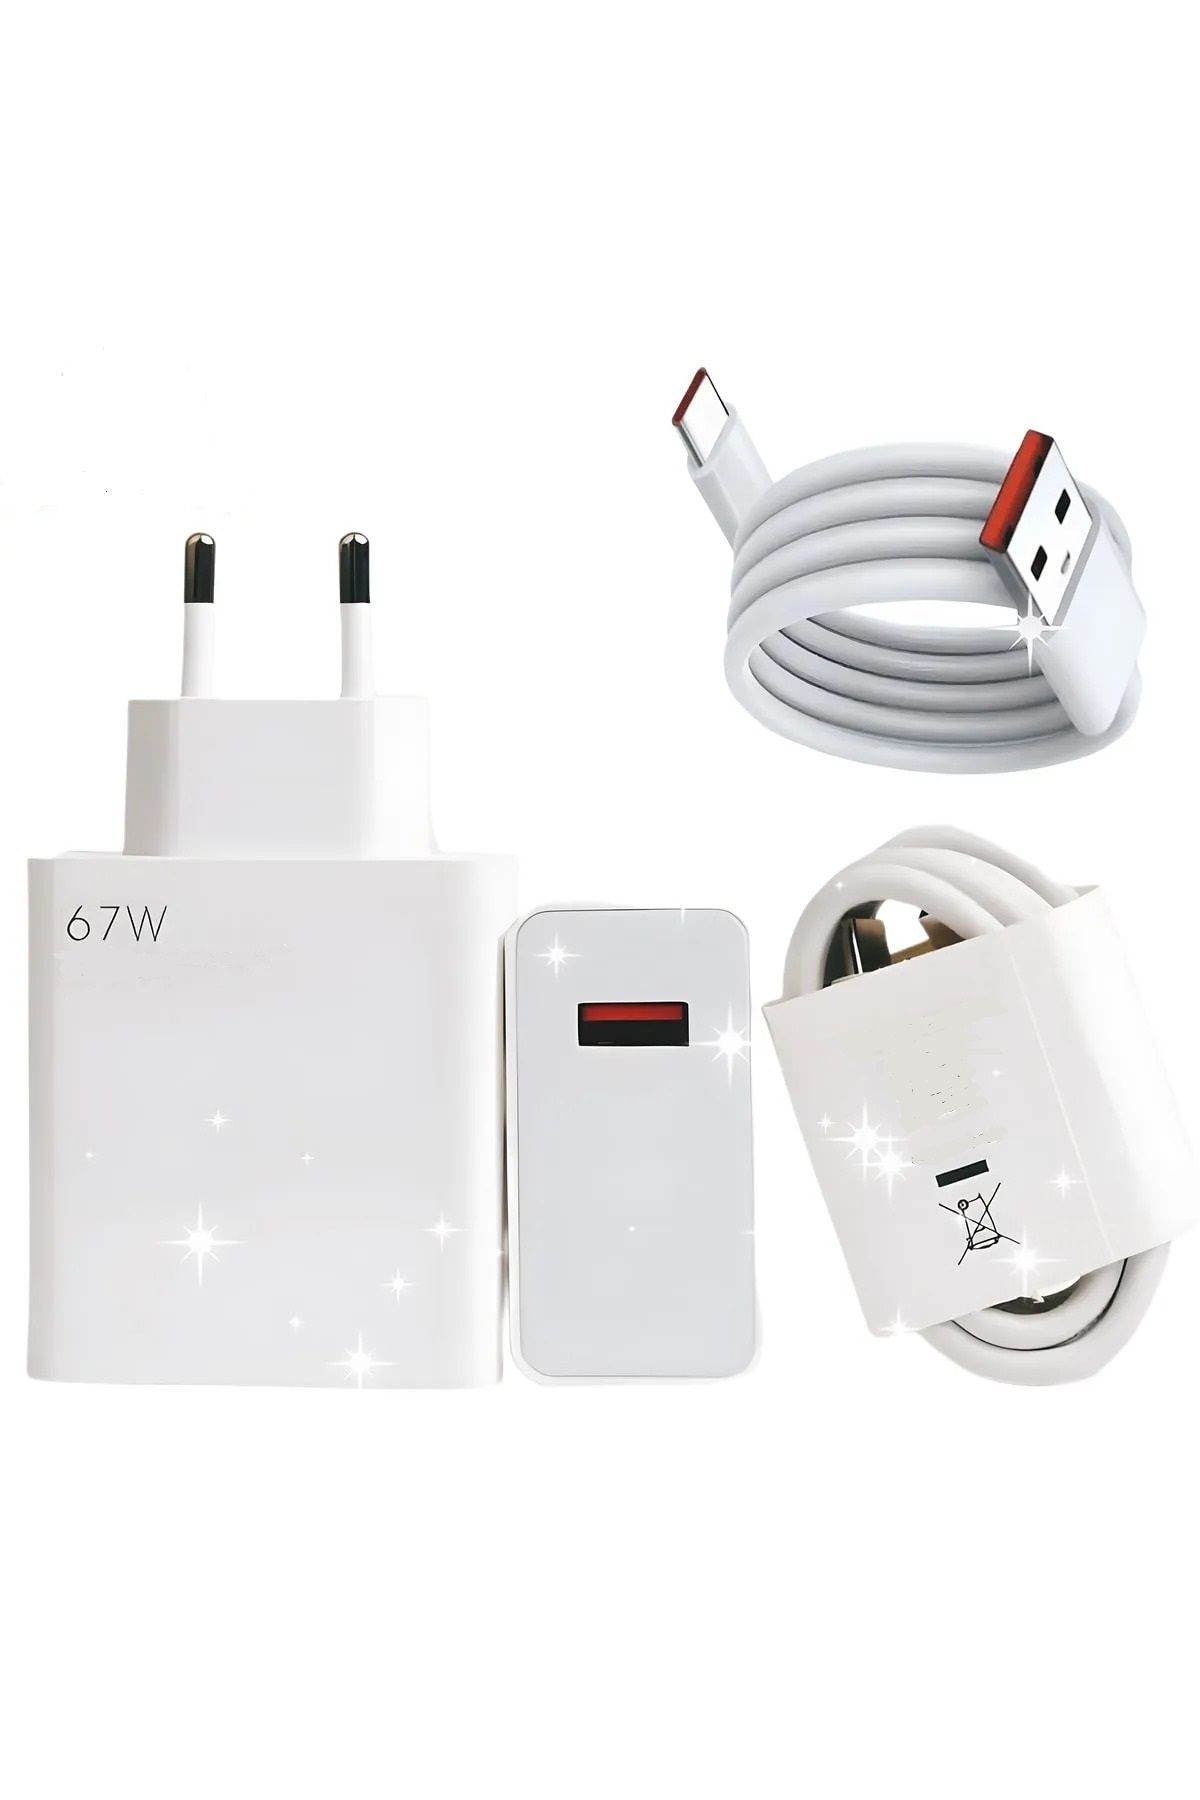 Genel Markalar Type-c 67w (WATT) Ultra Hızlı Şarj Aleti Adaptör Kablo Set